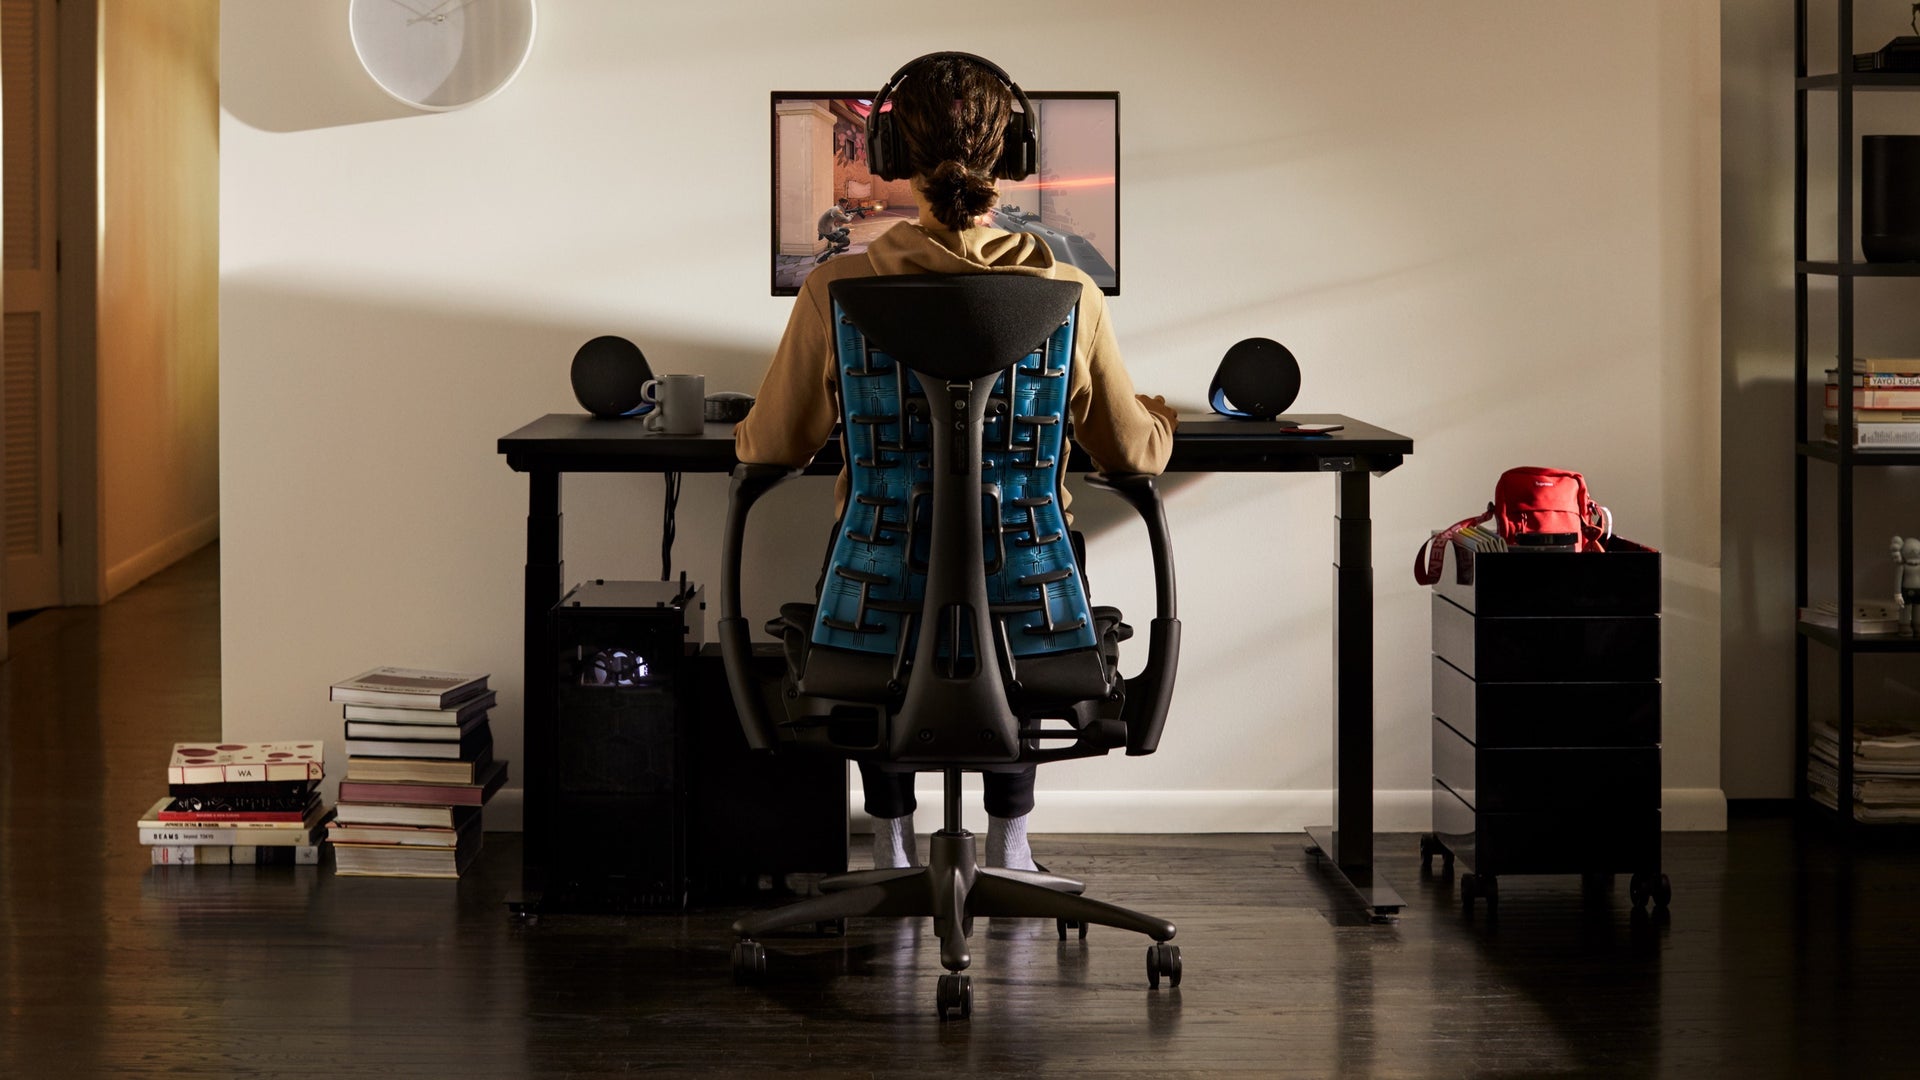 Eine Person in einem Wohnraum sitzt auf dem Embody Gaming-Stuhl und schaut auf einen Bildschirm am Ollin Monitorarm, der auf dem Gaming-Schreibtisch steht.